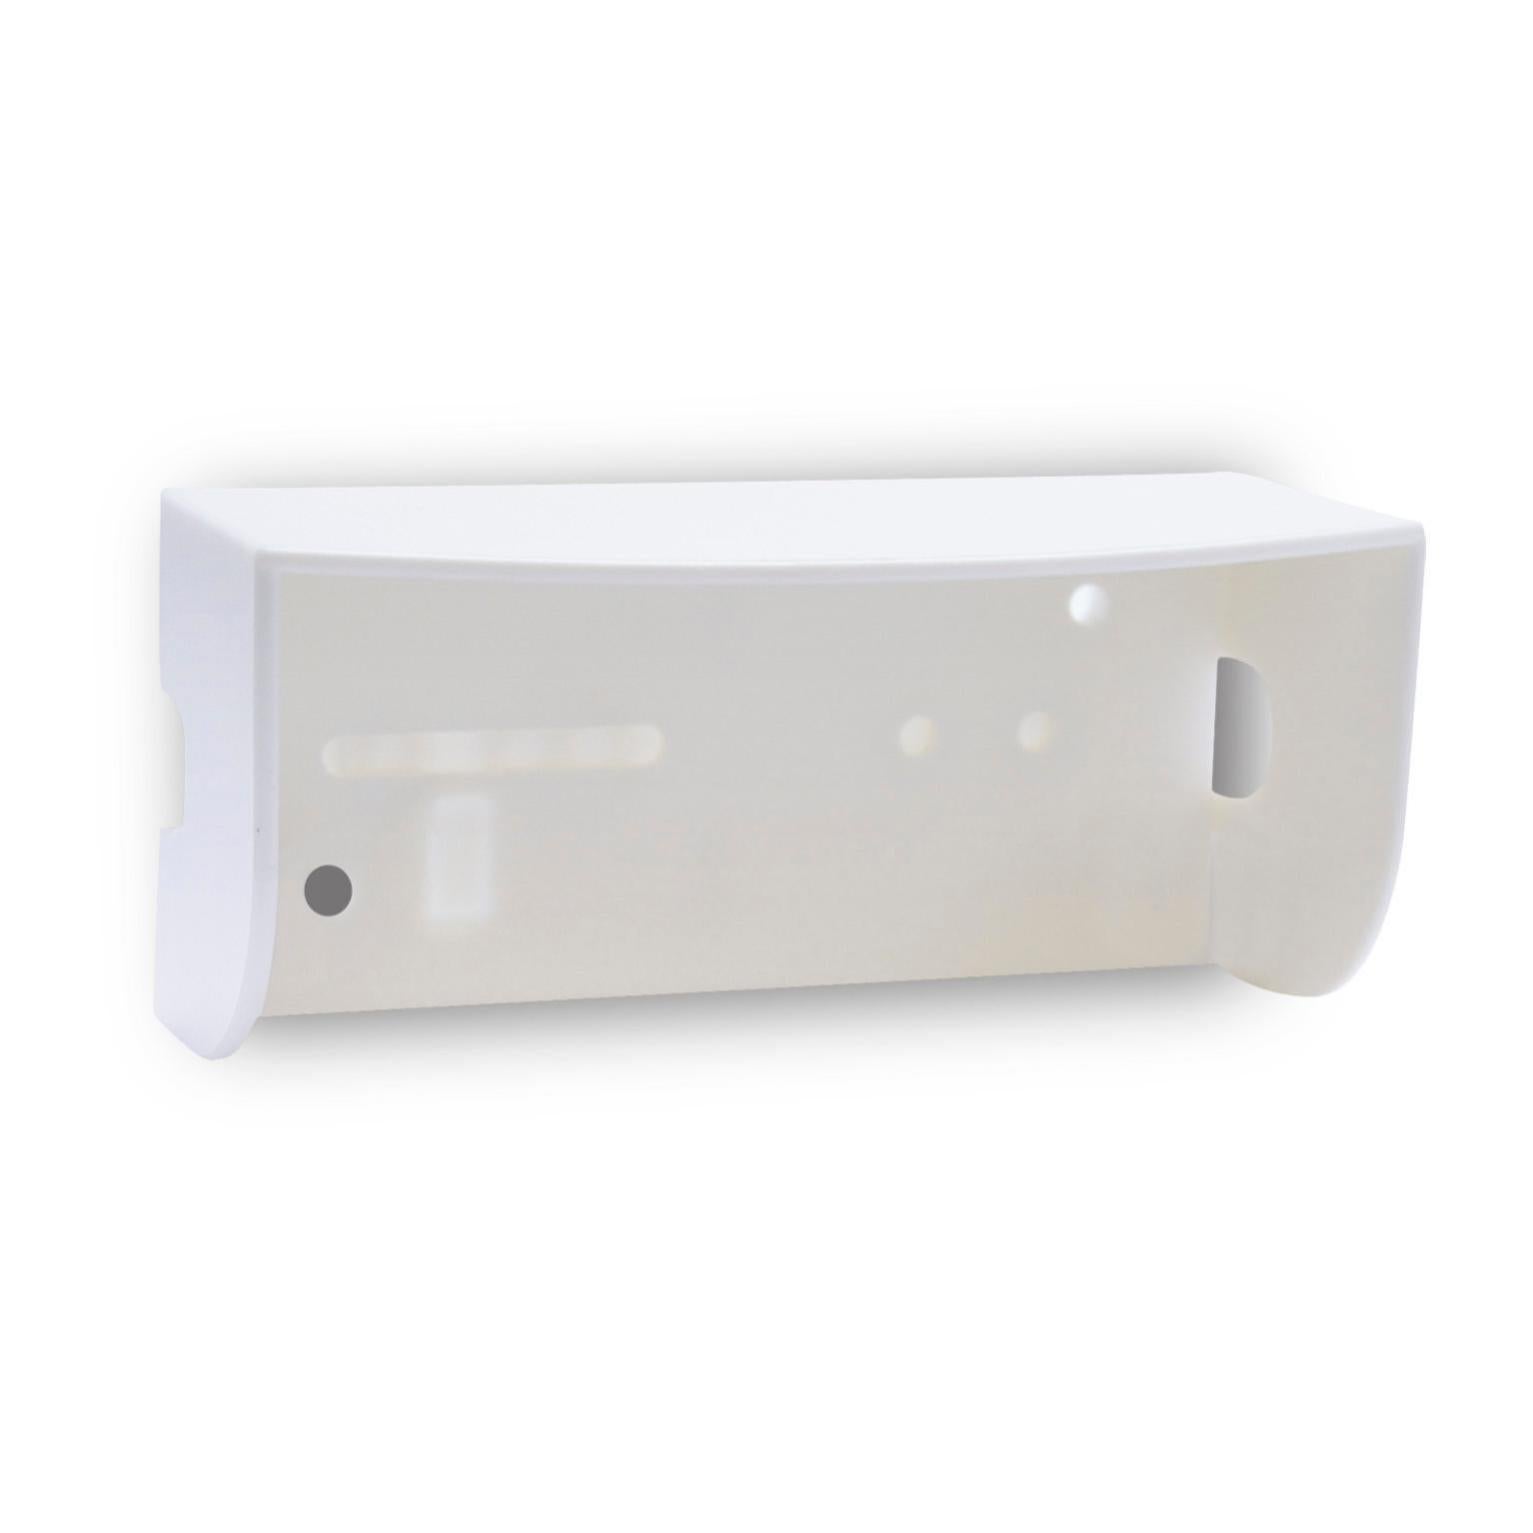 Visière pour bouton de sonnette EXTEL Protect, blanc